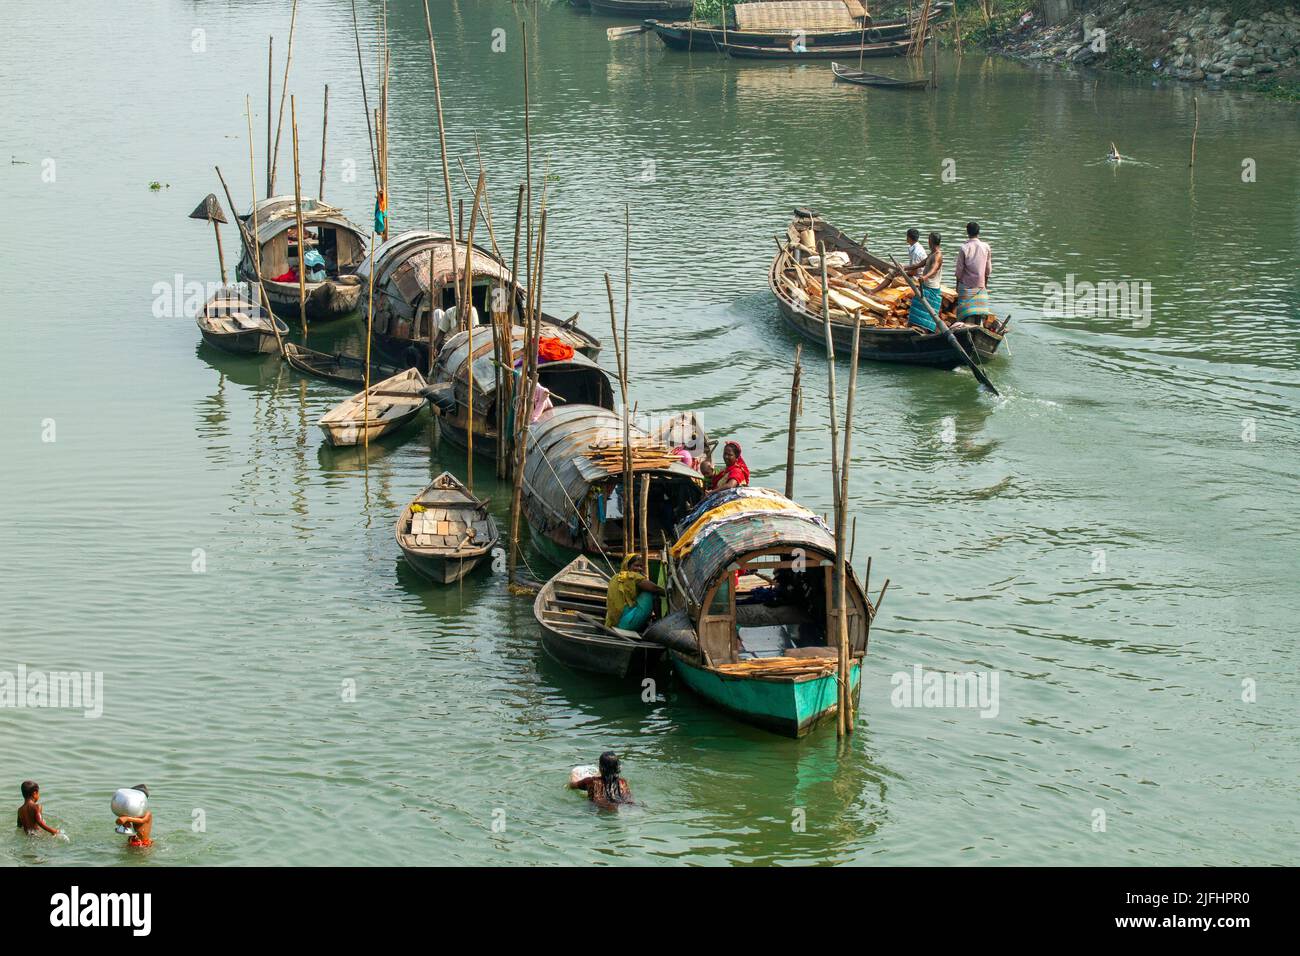 A row of narrowboats belonging to gypsies moored at a canal near Meghna River at Sahapur in Sonargaon, Narayanganj, Bangladesh. Stock Photo